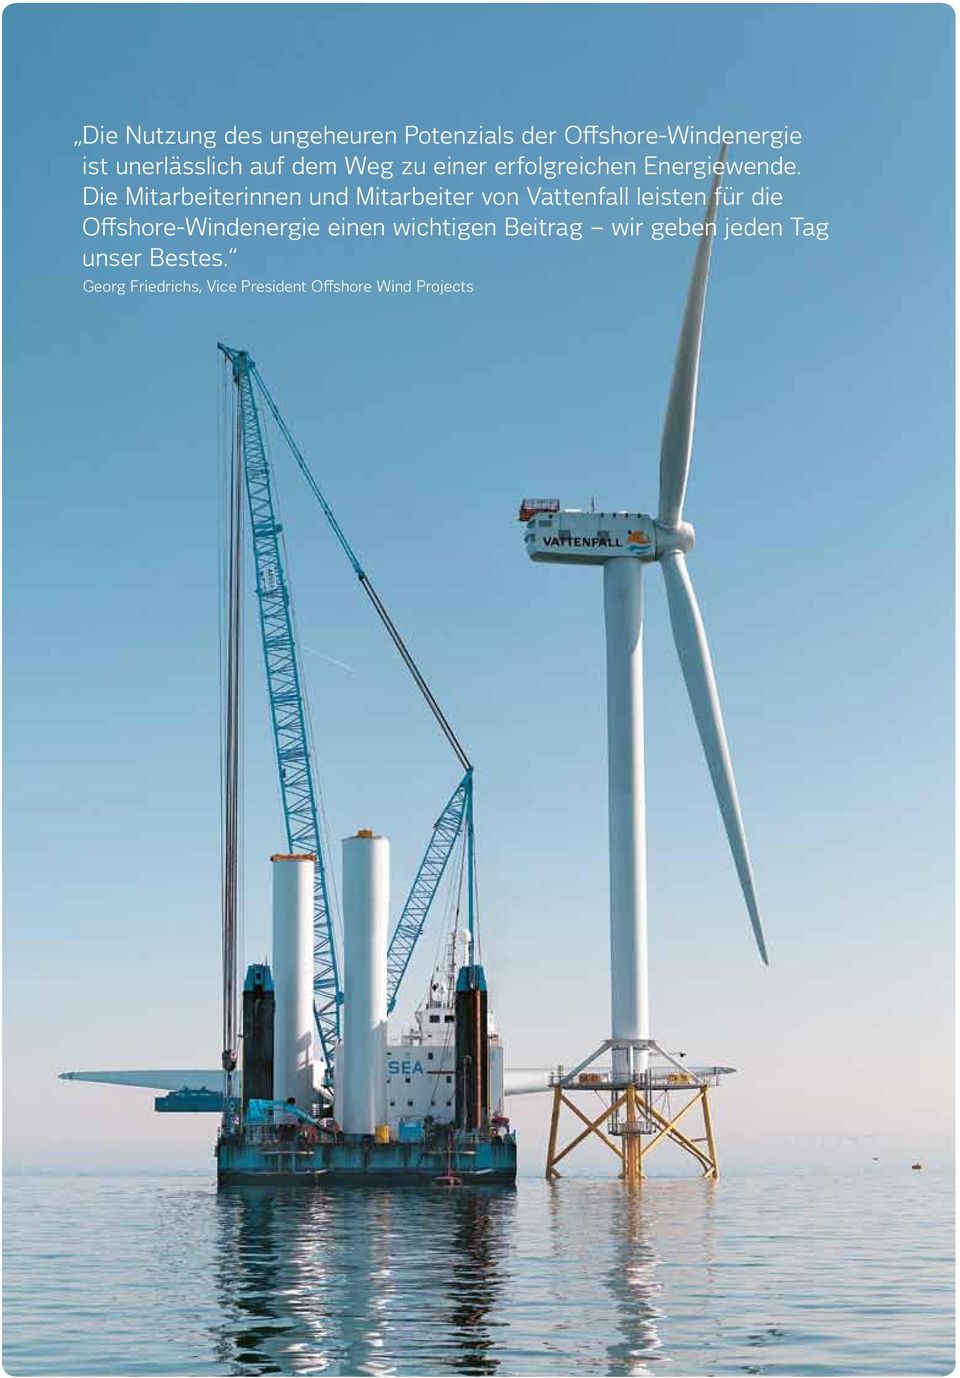 Die Mitarbeiterinnen und Mitarbeiter von Vattenfall leisten für die Offshore-Windenergie